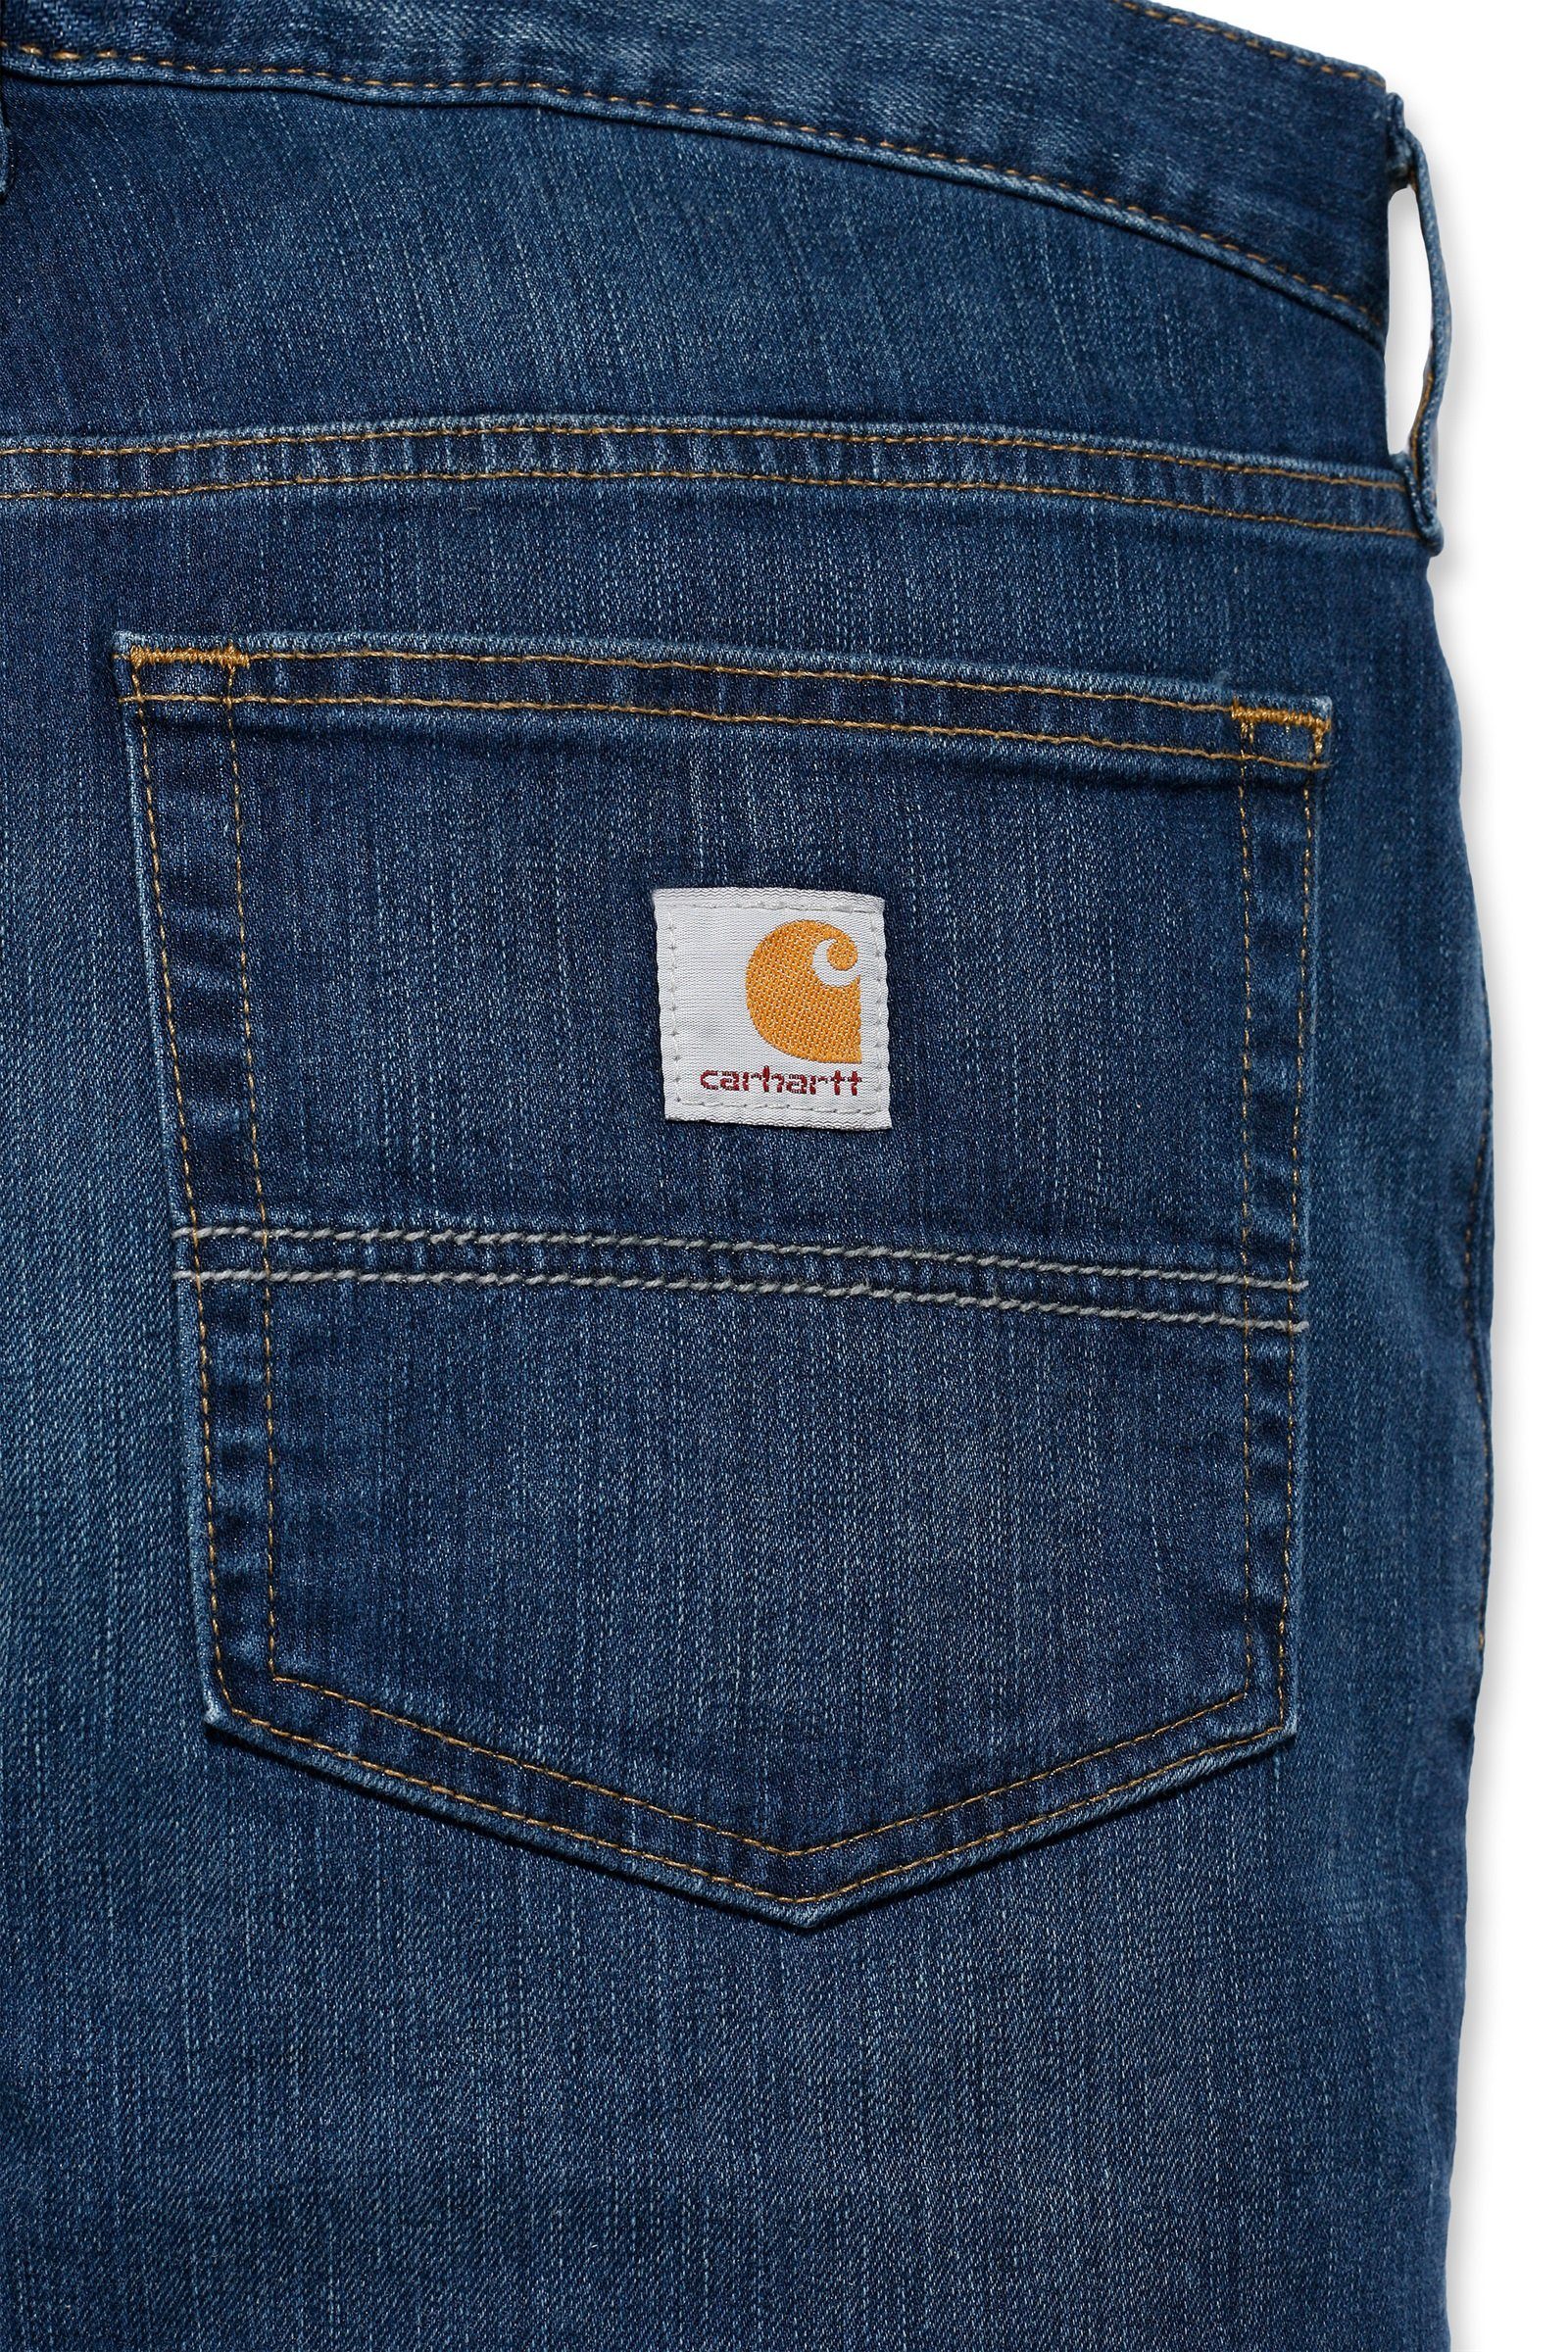 Carhartt Regular-fit-Jeans Carhartt Herren Jeans coldwater Straight Flex Relaxed Rugged